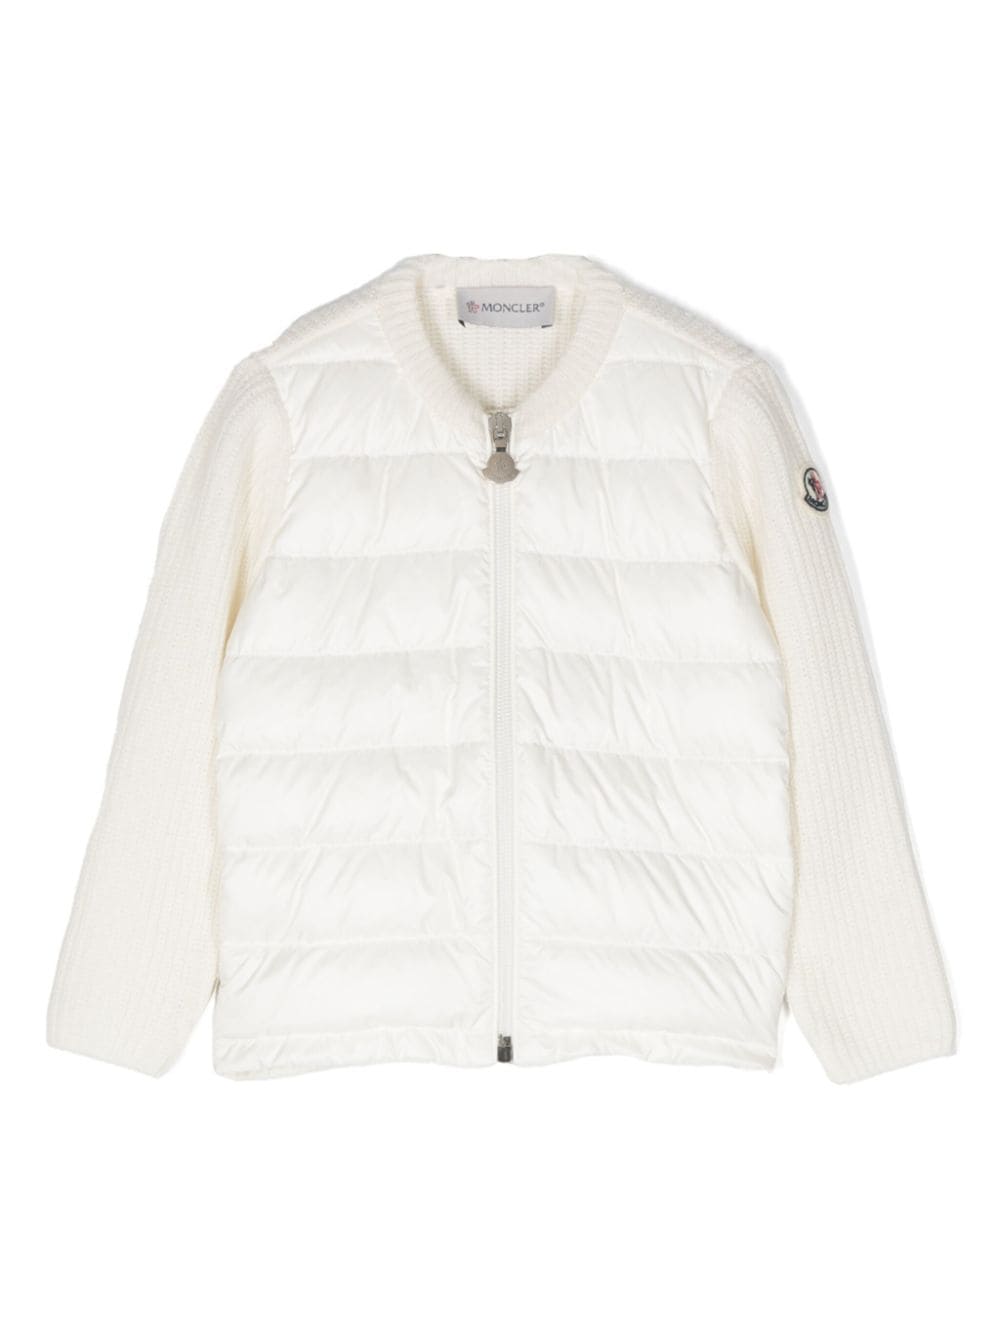 Moncler Enfant logo-patch padded jacket - White von Moncler Enfant